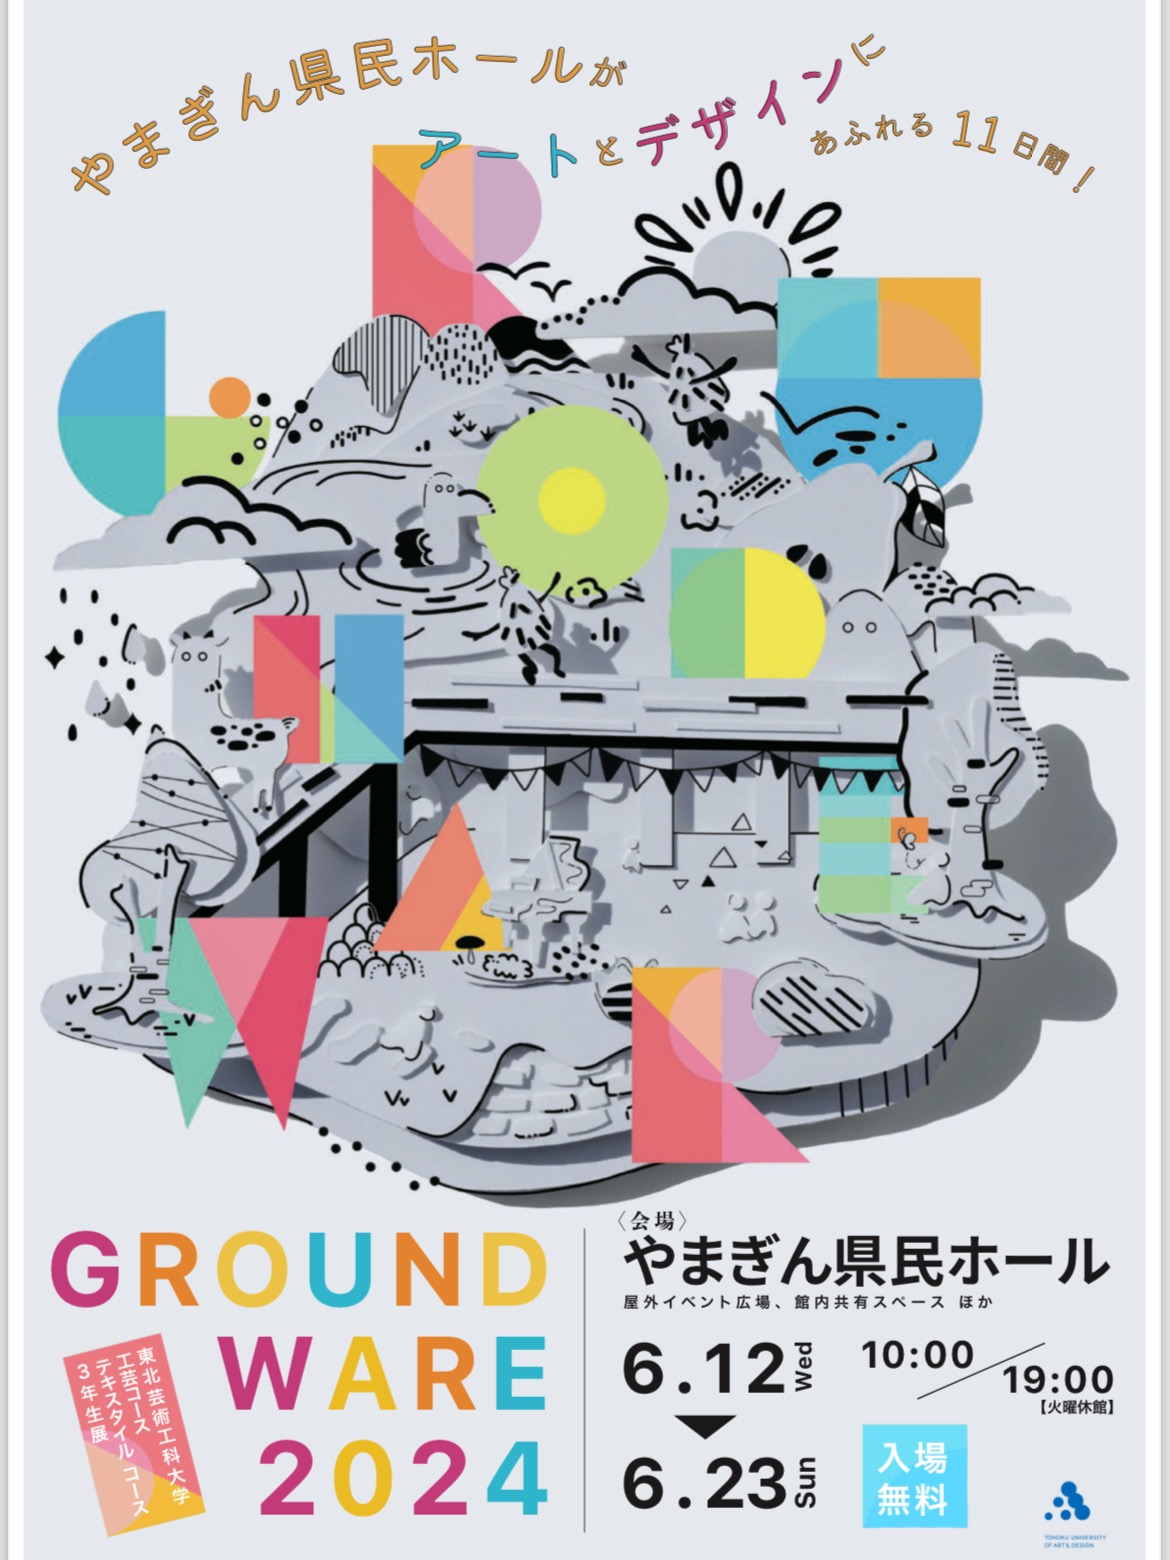 【山形イベント情報6/12〜23】GROUND WARE 2024